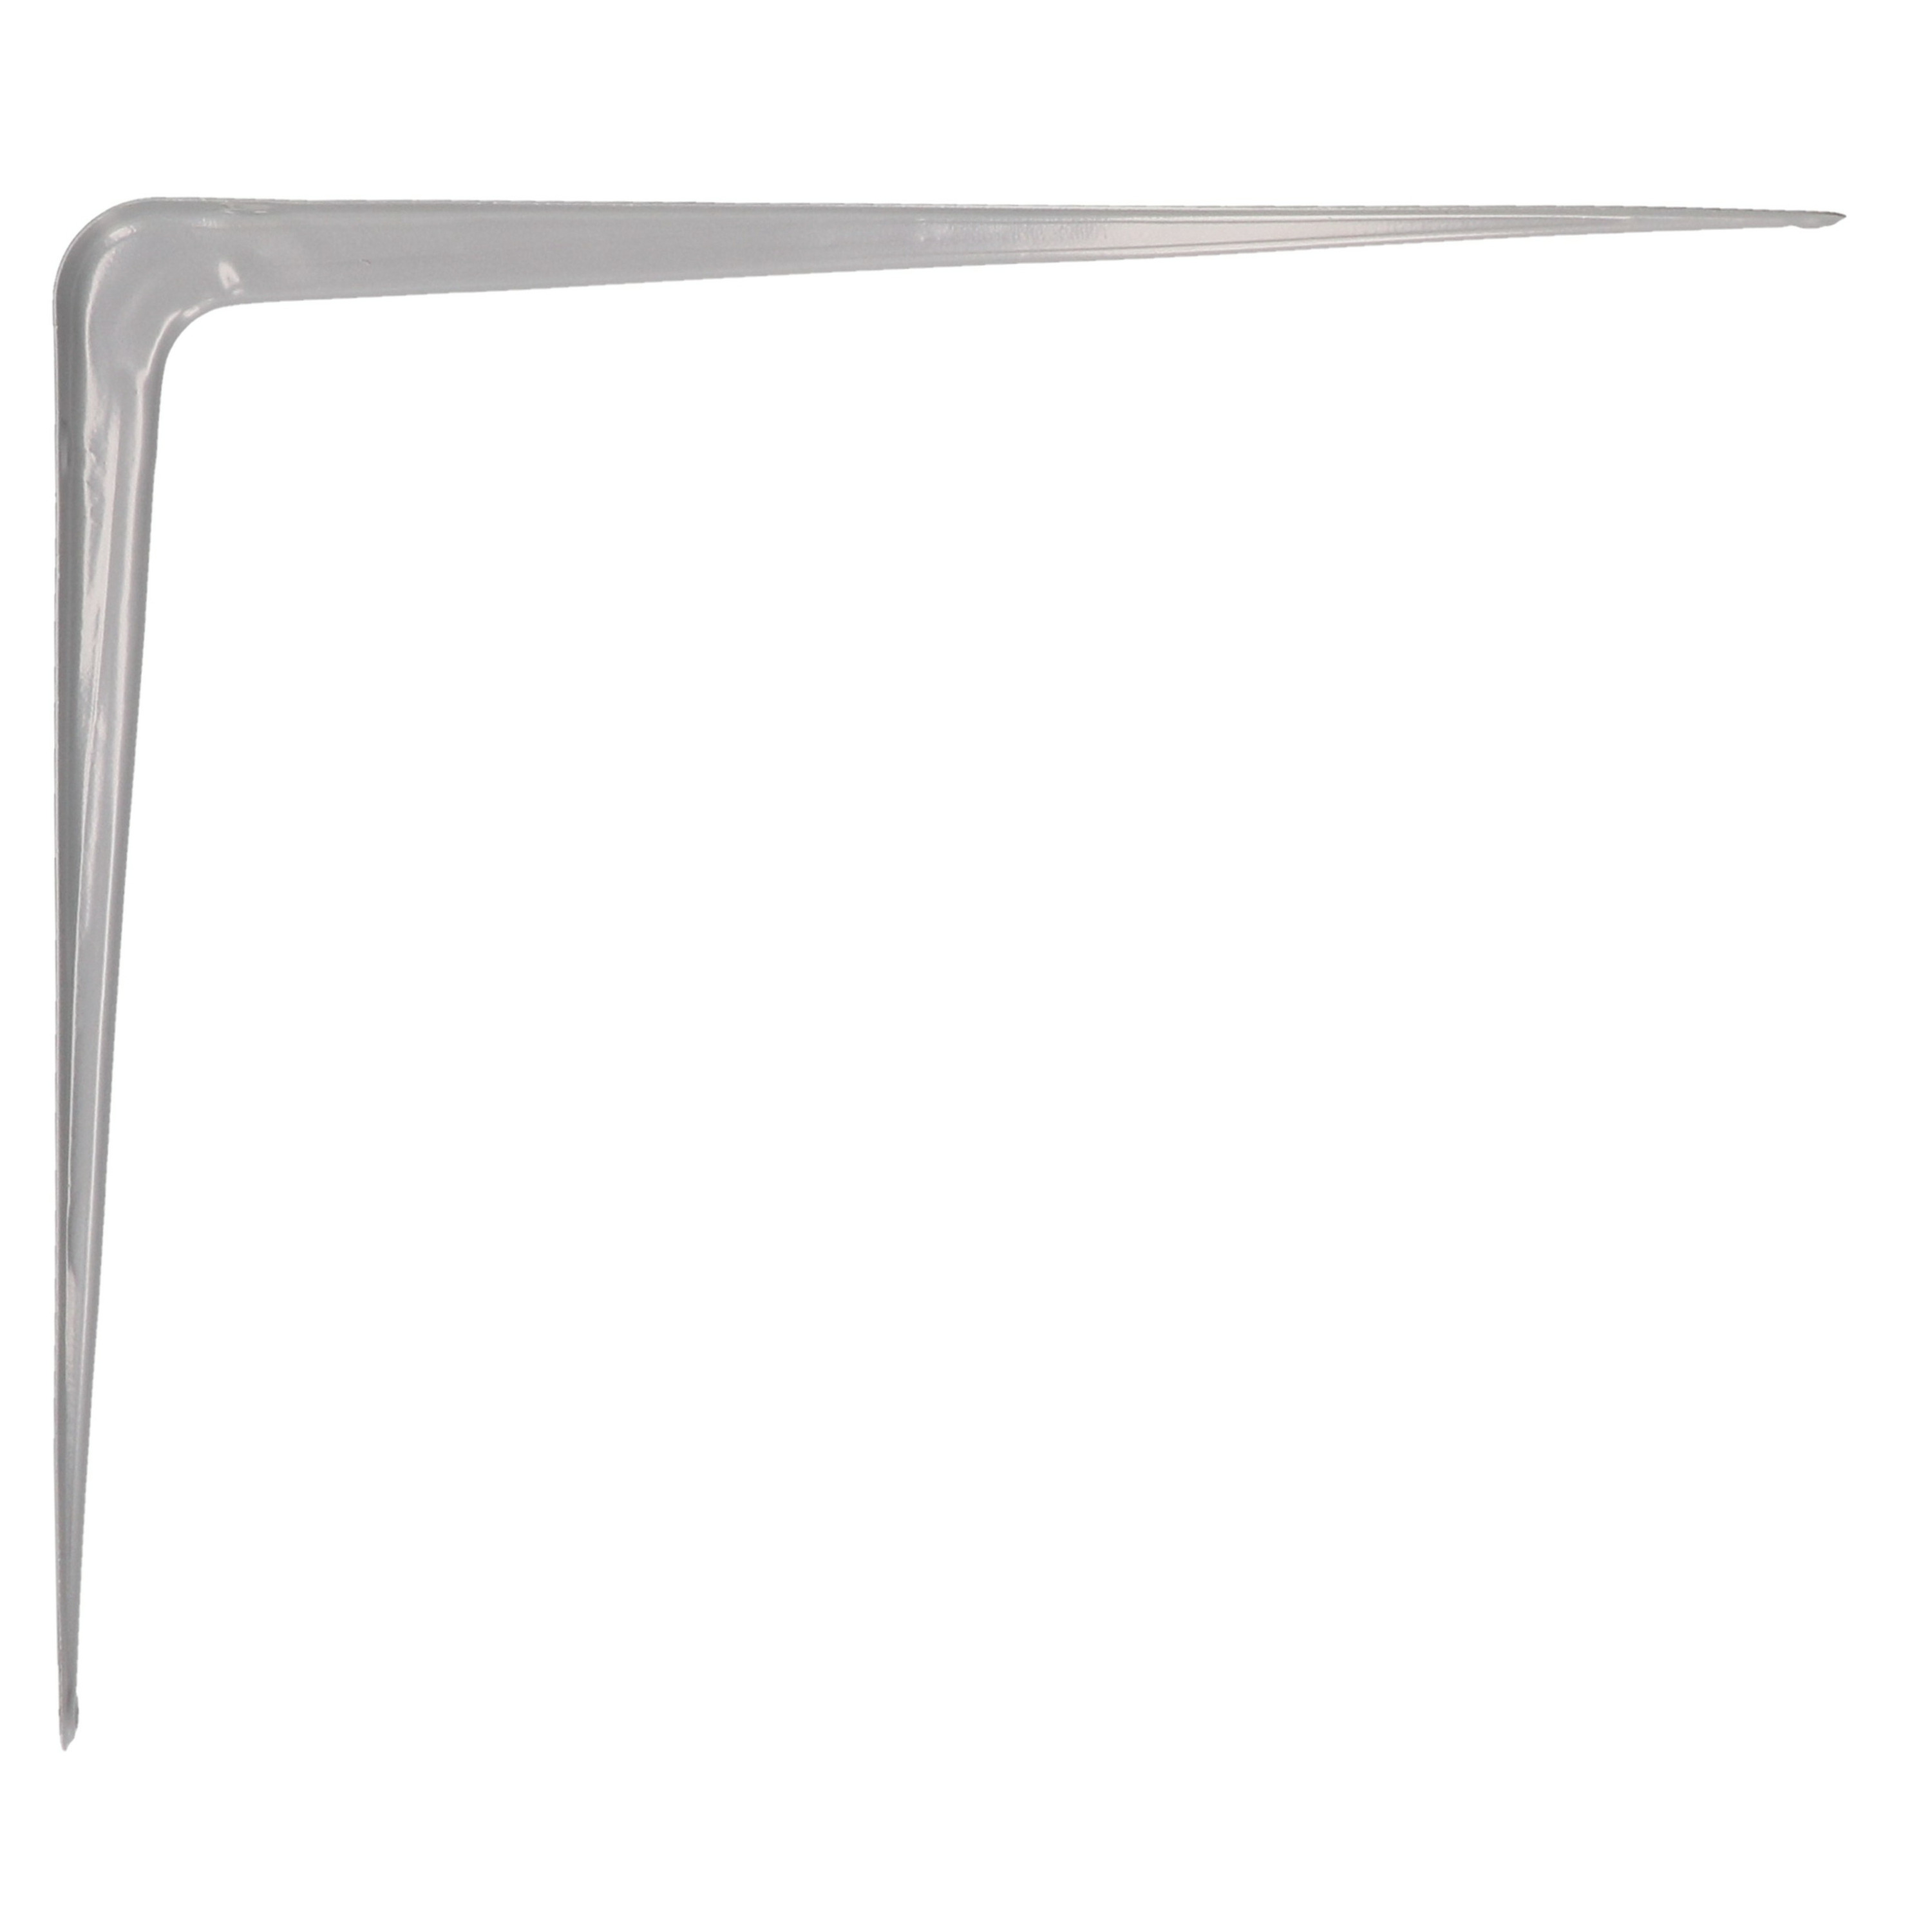 AMIG Plankdrager/planksteun van metaal - gelakt zilver - H400 x B350 mm -